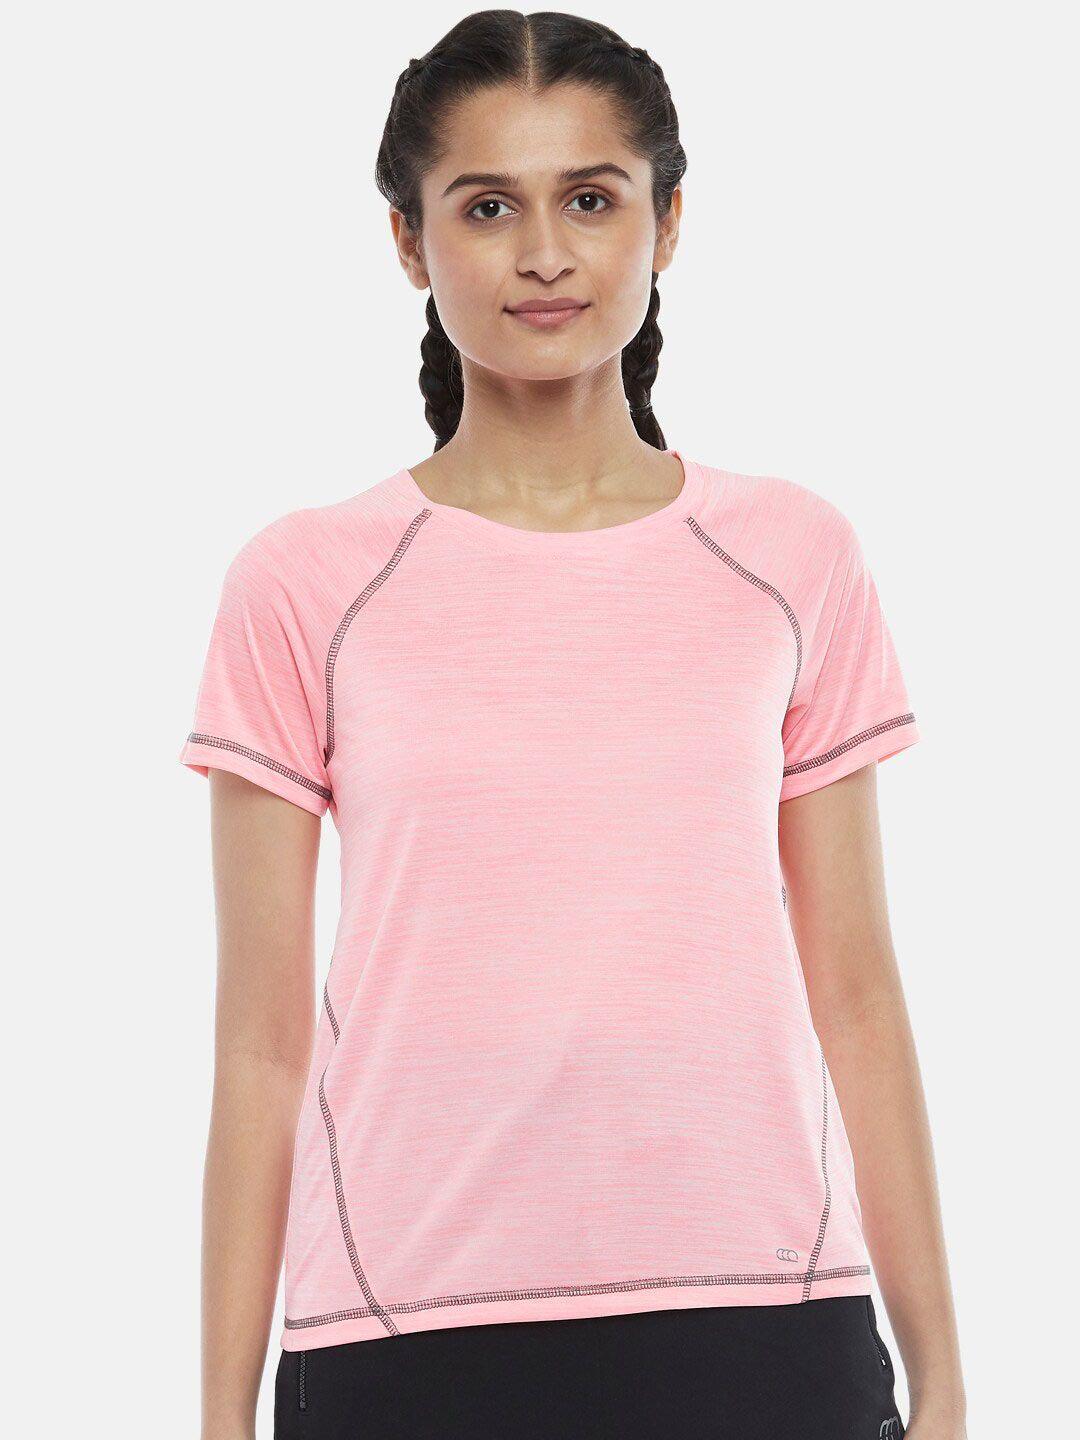 ajile-by-pantaloons-women-pink-t-shirt